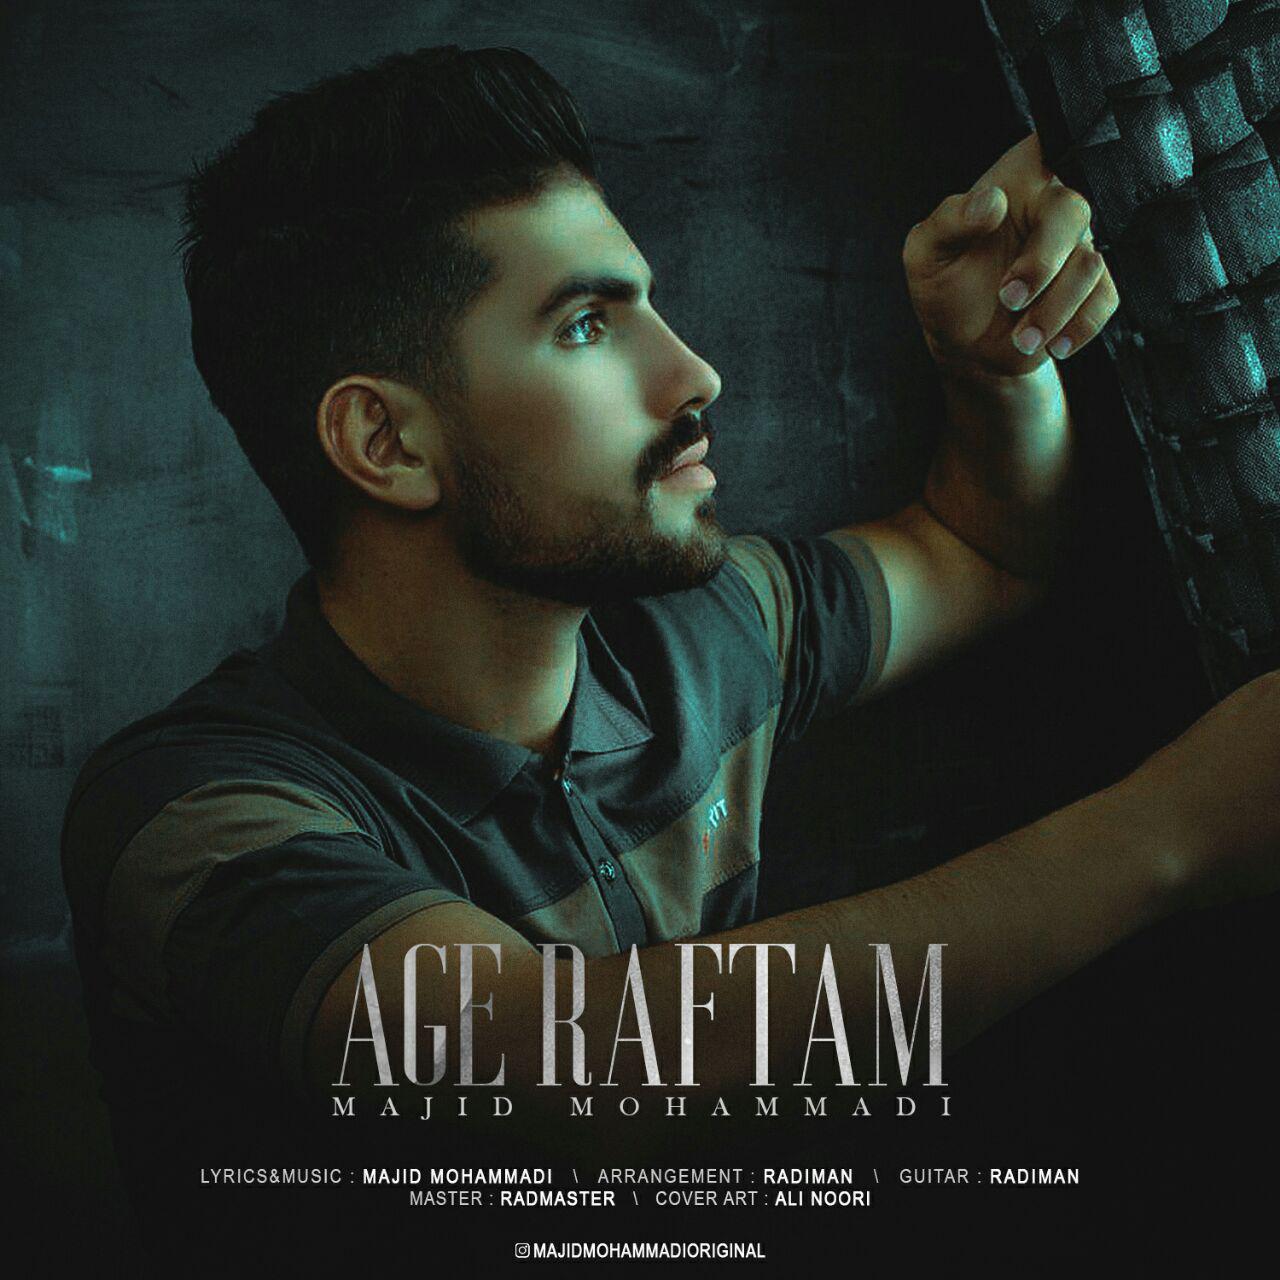  دانلود آهنگ جدید مجید محمدی - اگه رفتم | Download New Music By Majid Mohammadi - Age Raftam